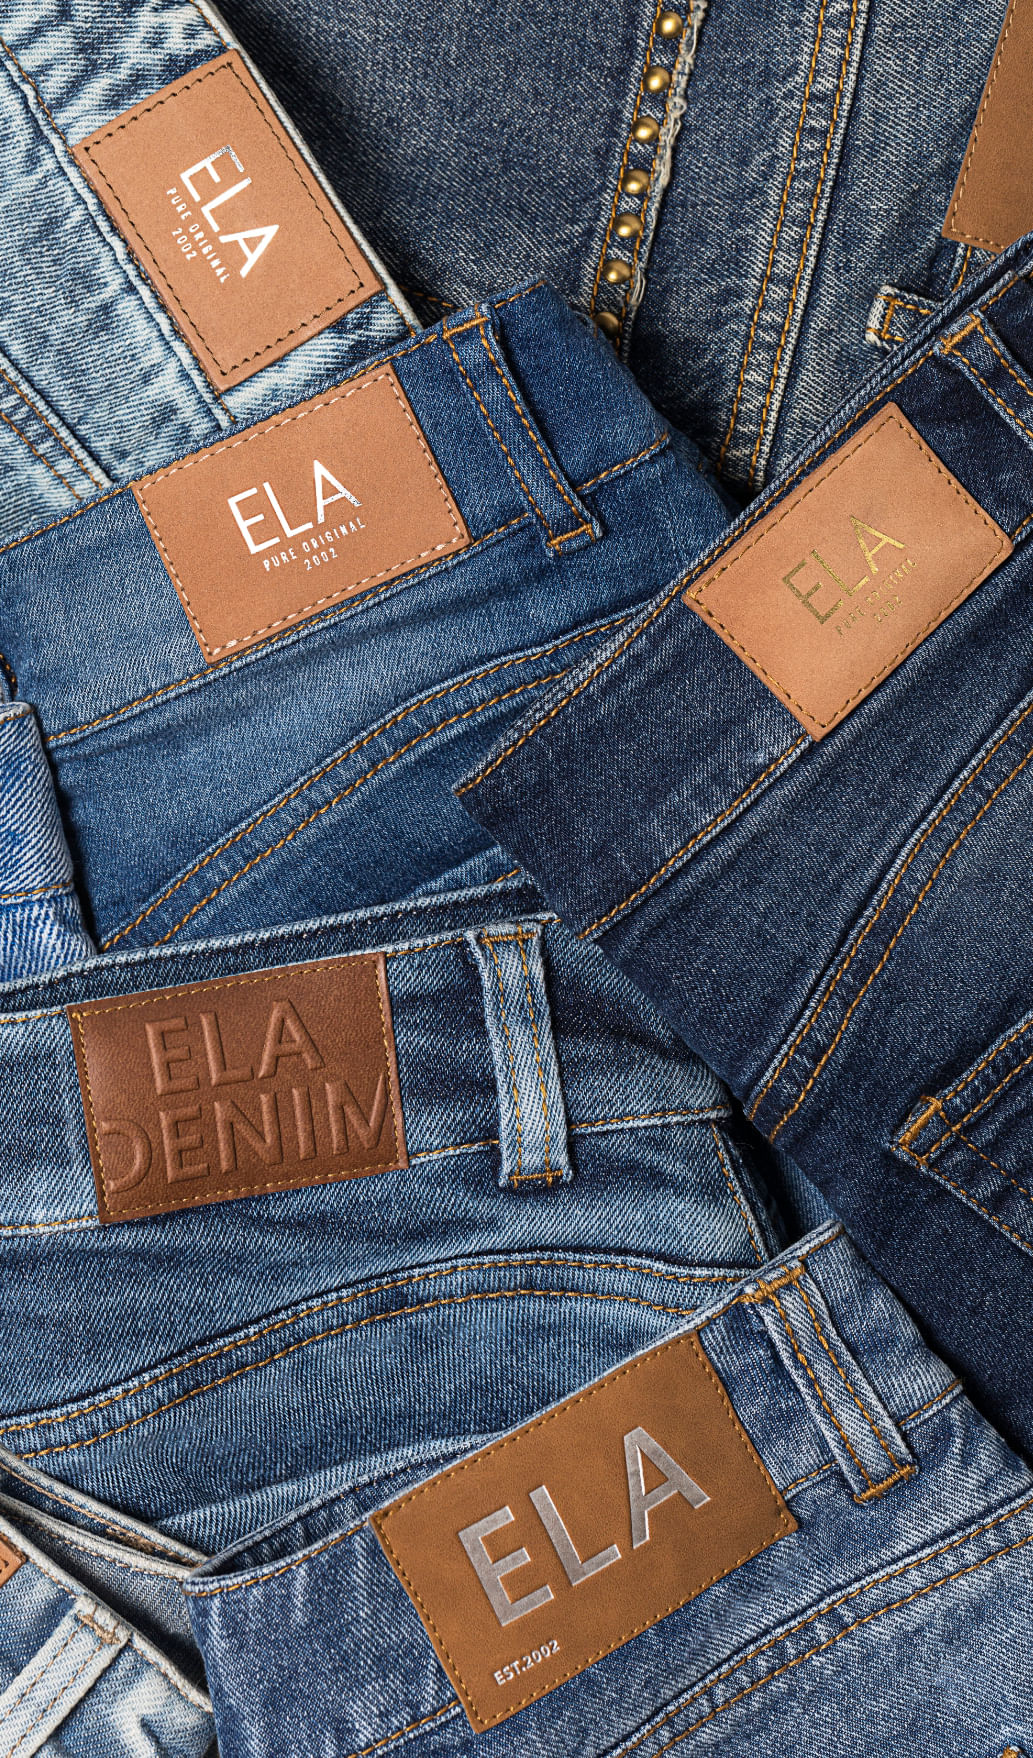 Foto de jeans de la marca ELA 